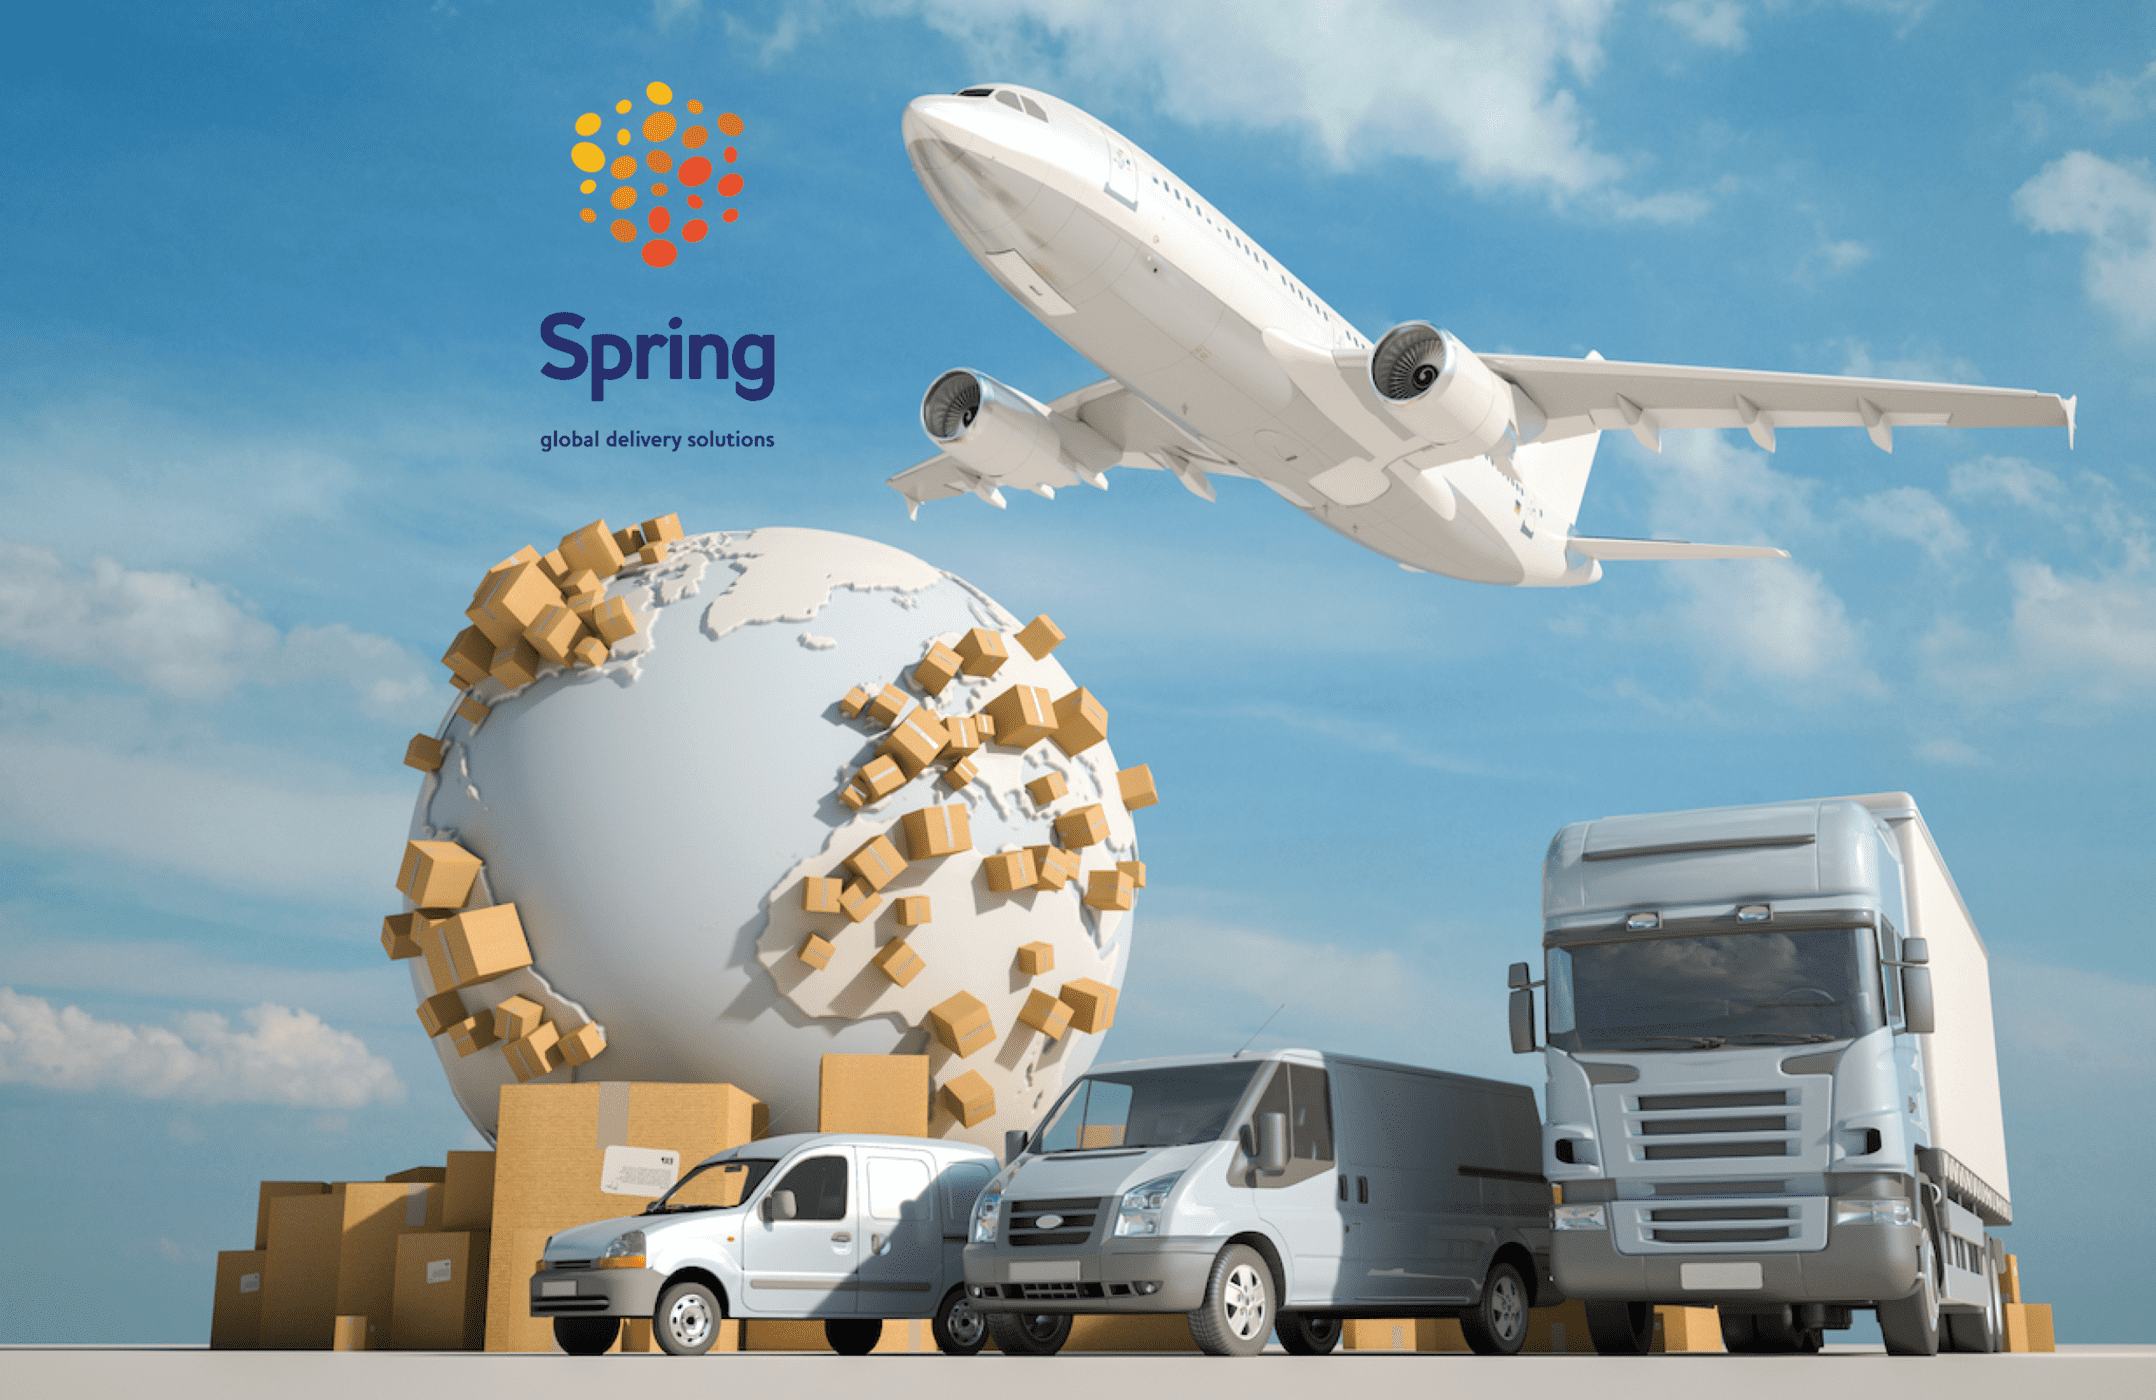 Todo sobre Spring GDS: Envíos internacionales económicos